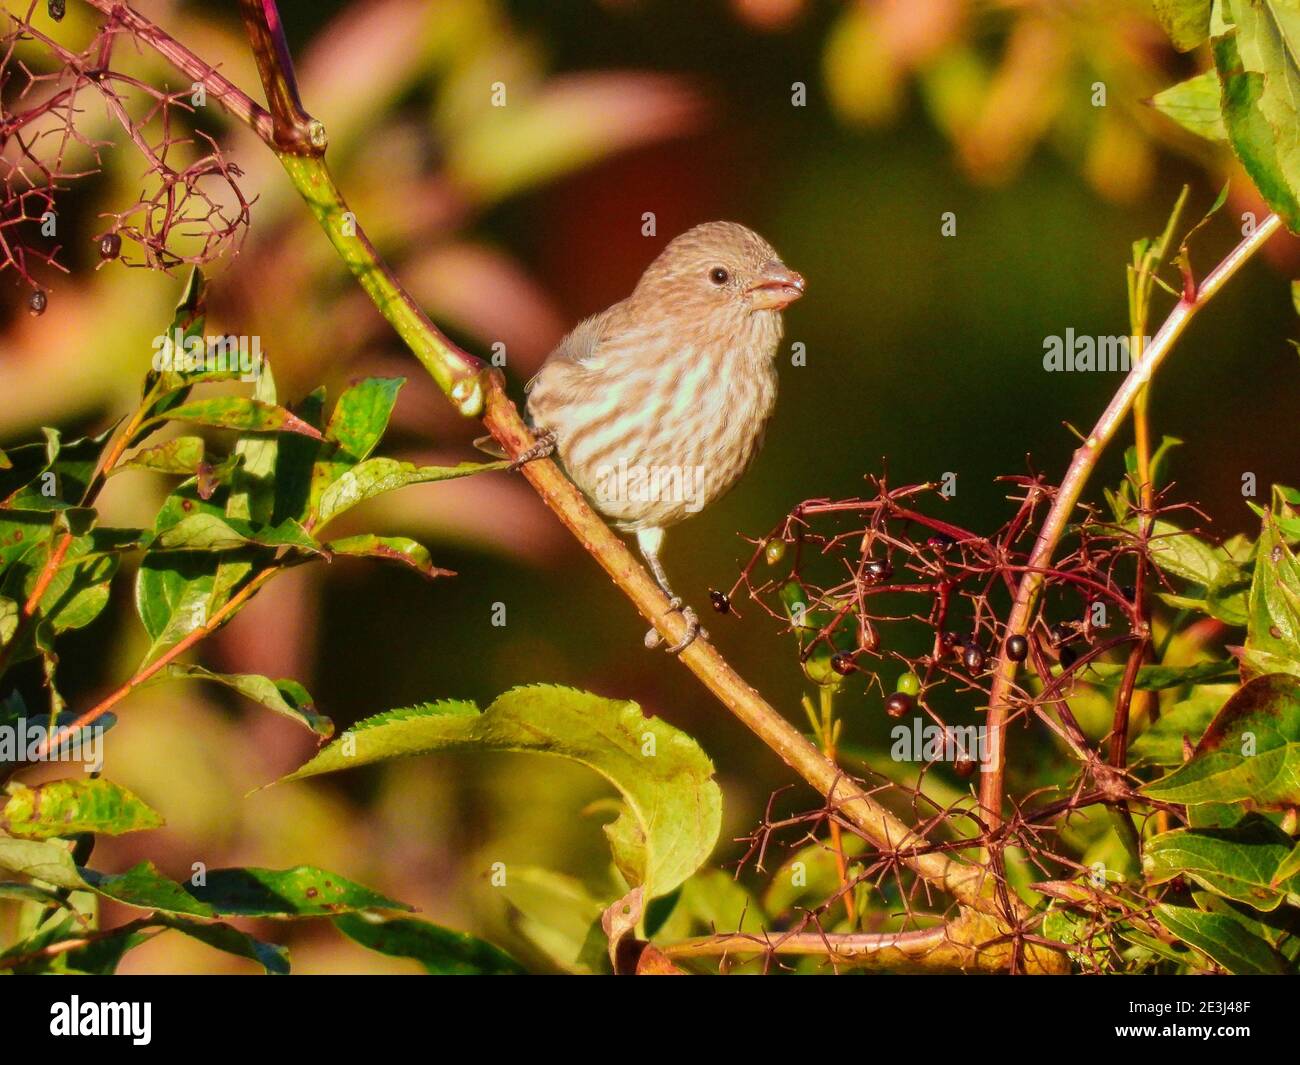 Nahaufnahme Weibliche Haus Finch Vogel auf einem Bürstenzweig thront Am Morgen Sonne essen Beeren neben ihr mit Grünes Laub und Obst im Hintergrund Stockfoto